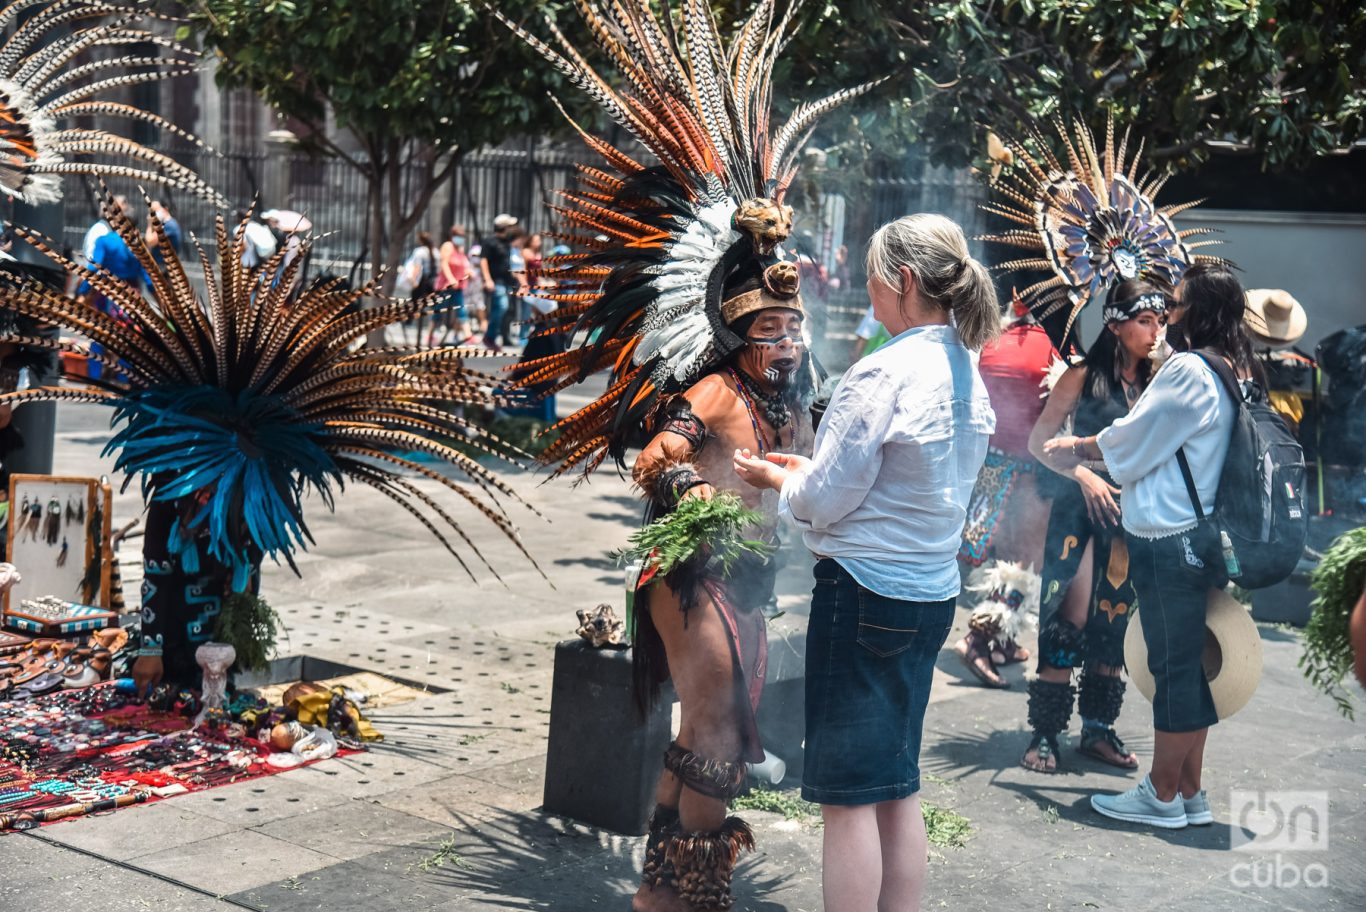 Las limpias espirituales, manifestación de la herencia cultural y espiritual de México. Foto: Kaloian.